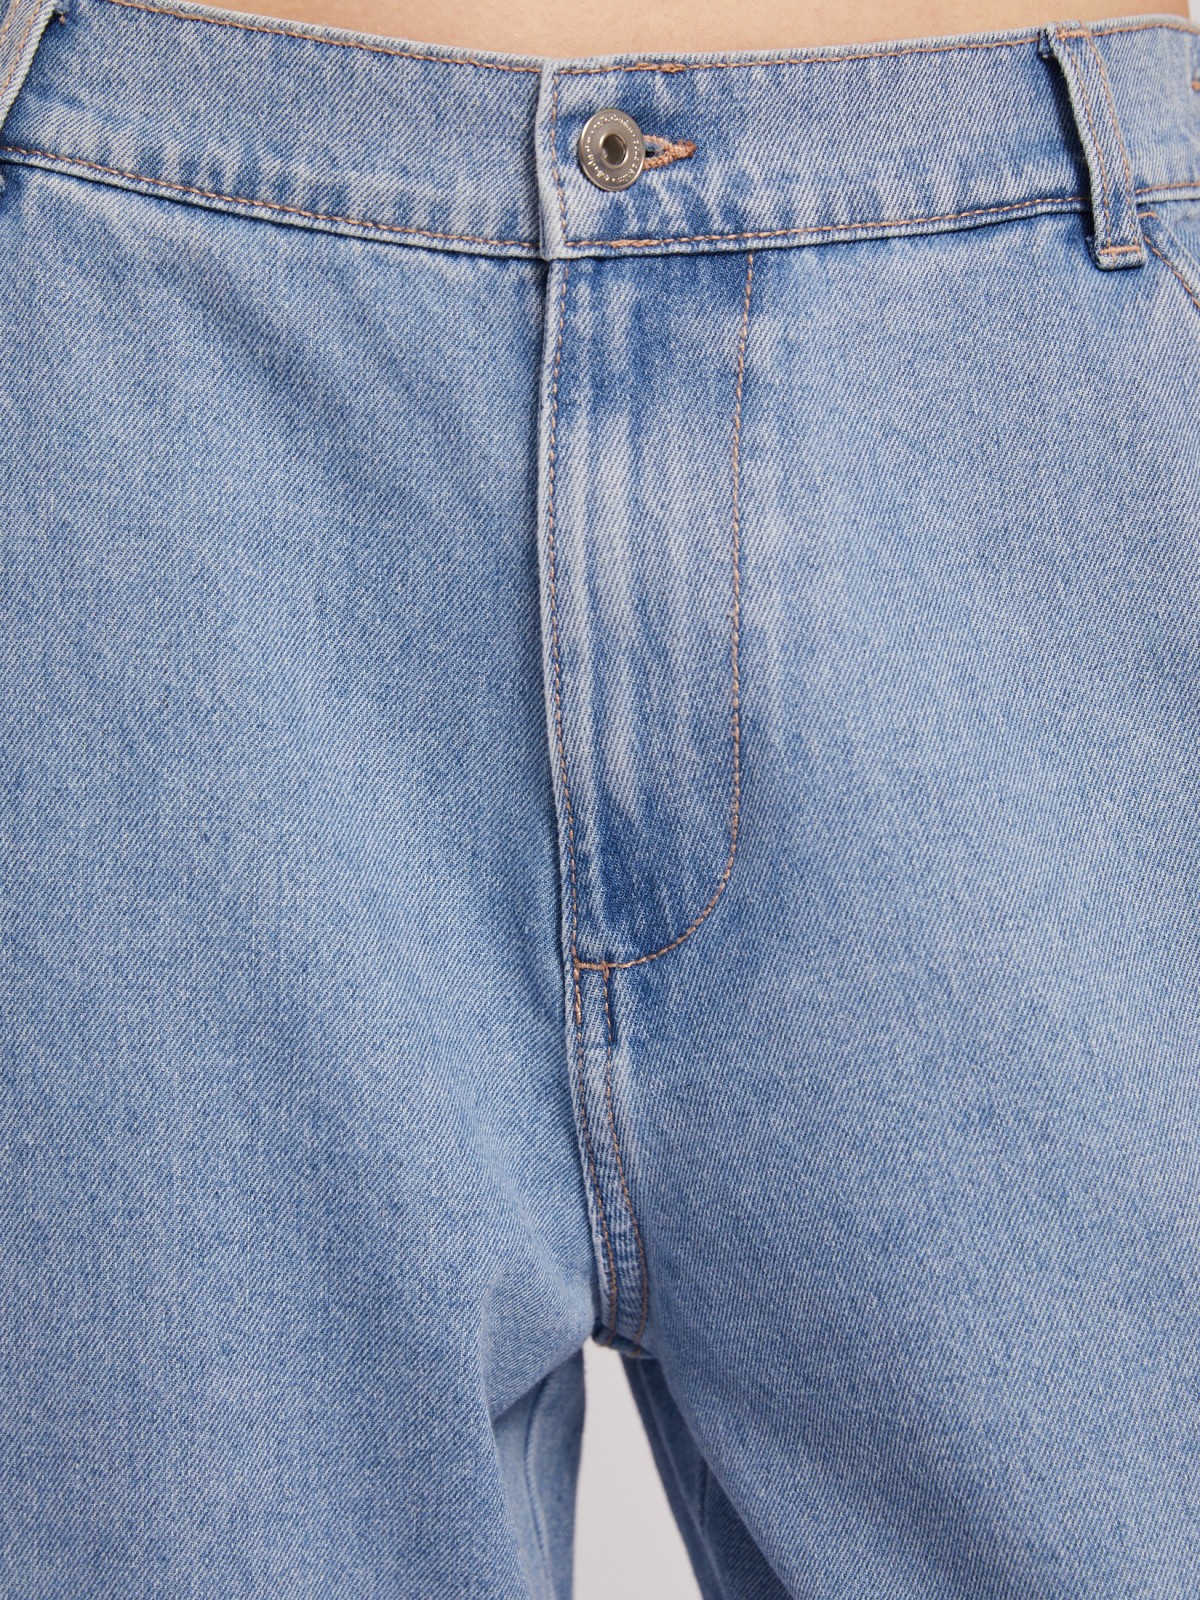 Джинсы-джоггеры на резинке с карманами карго zolla 02422719W171, цвет голубой, размер 26 - фото 4